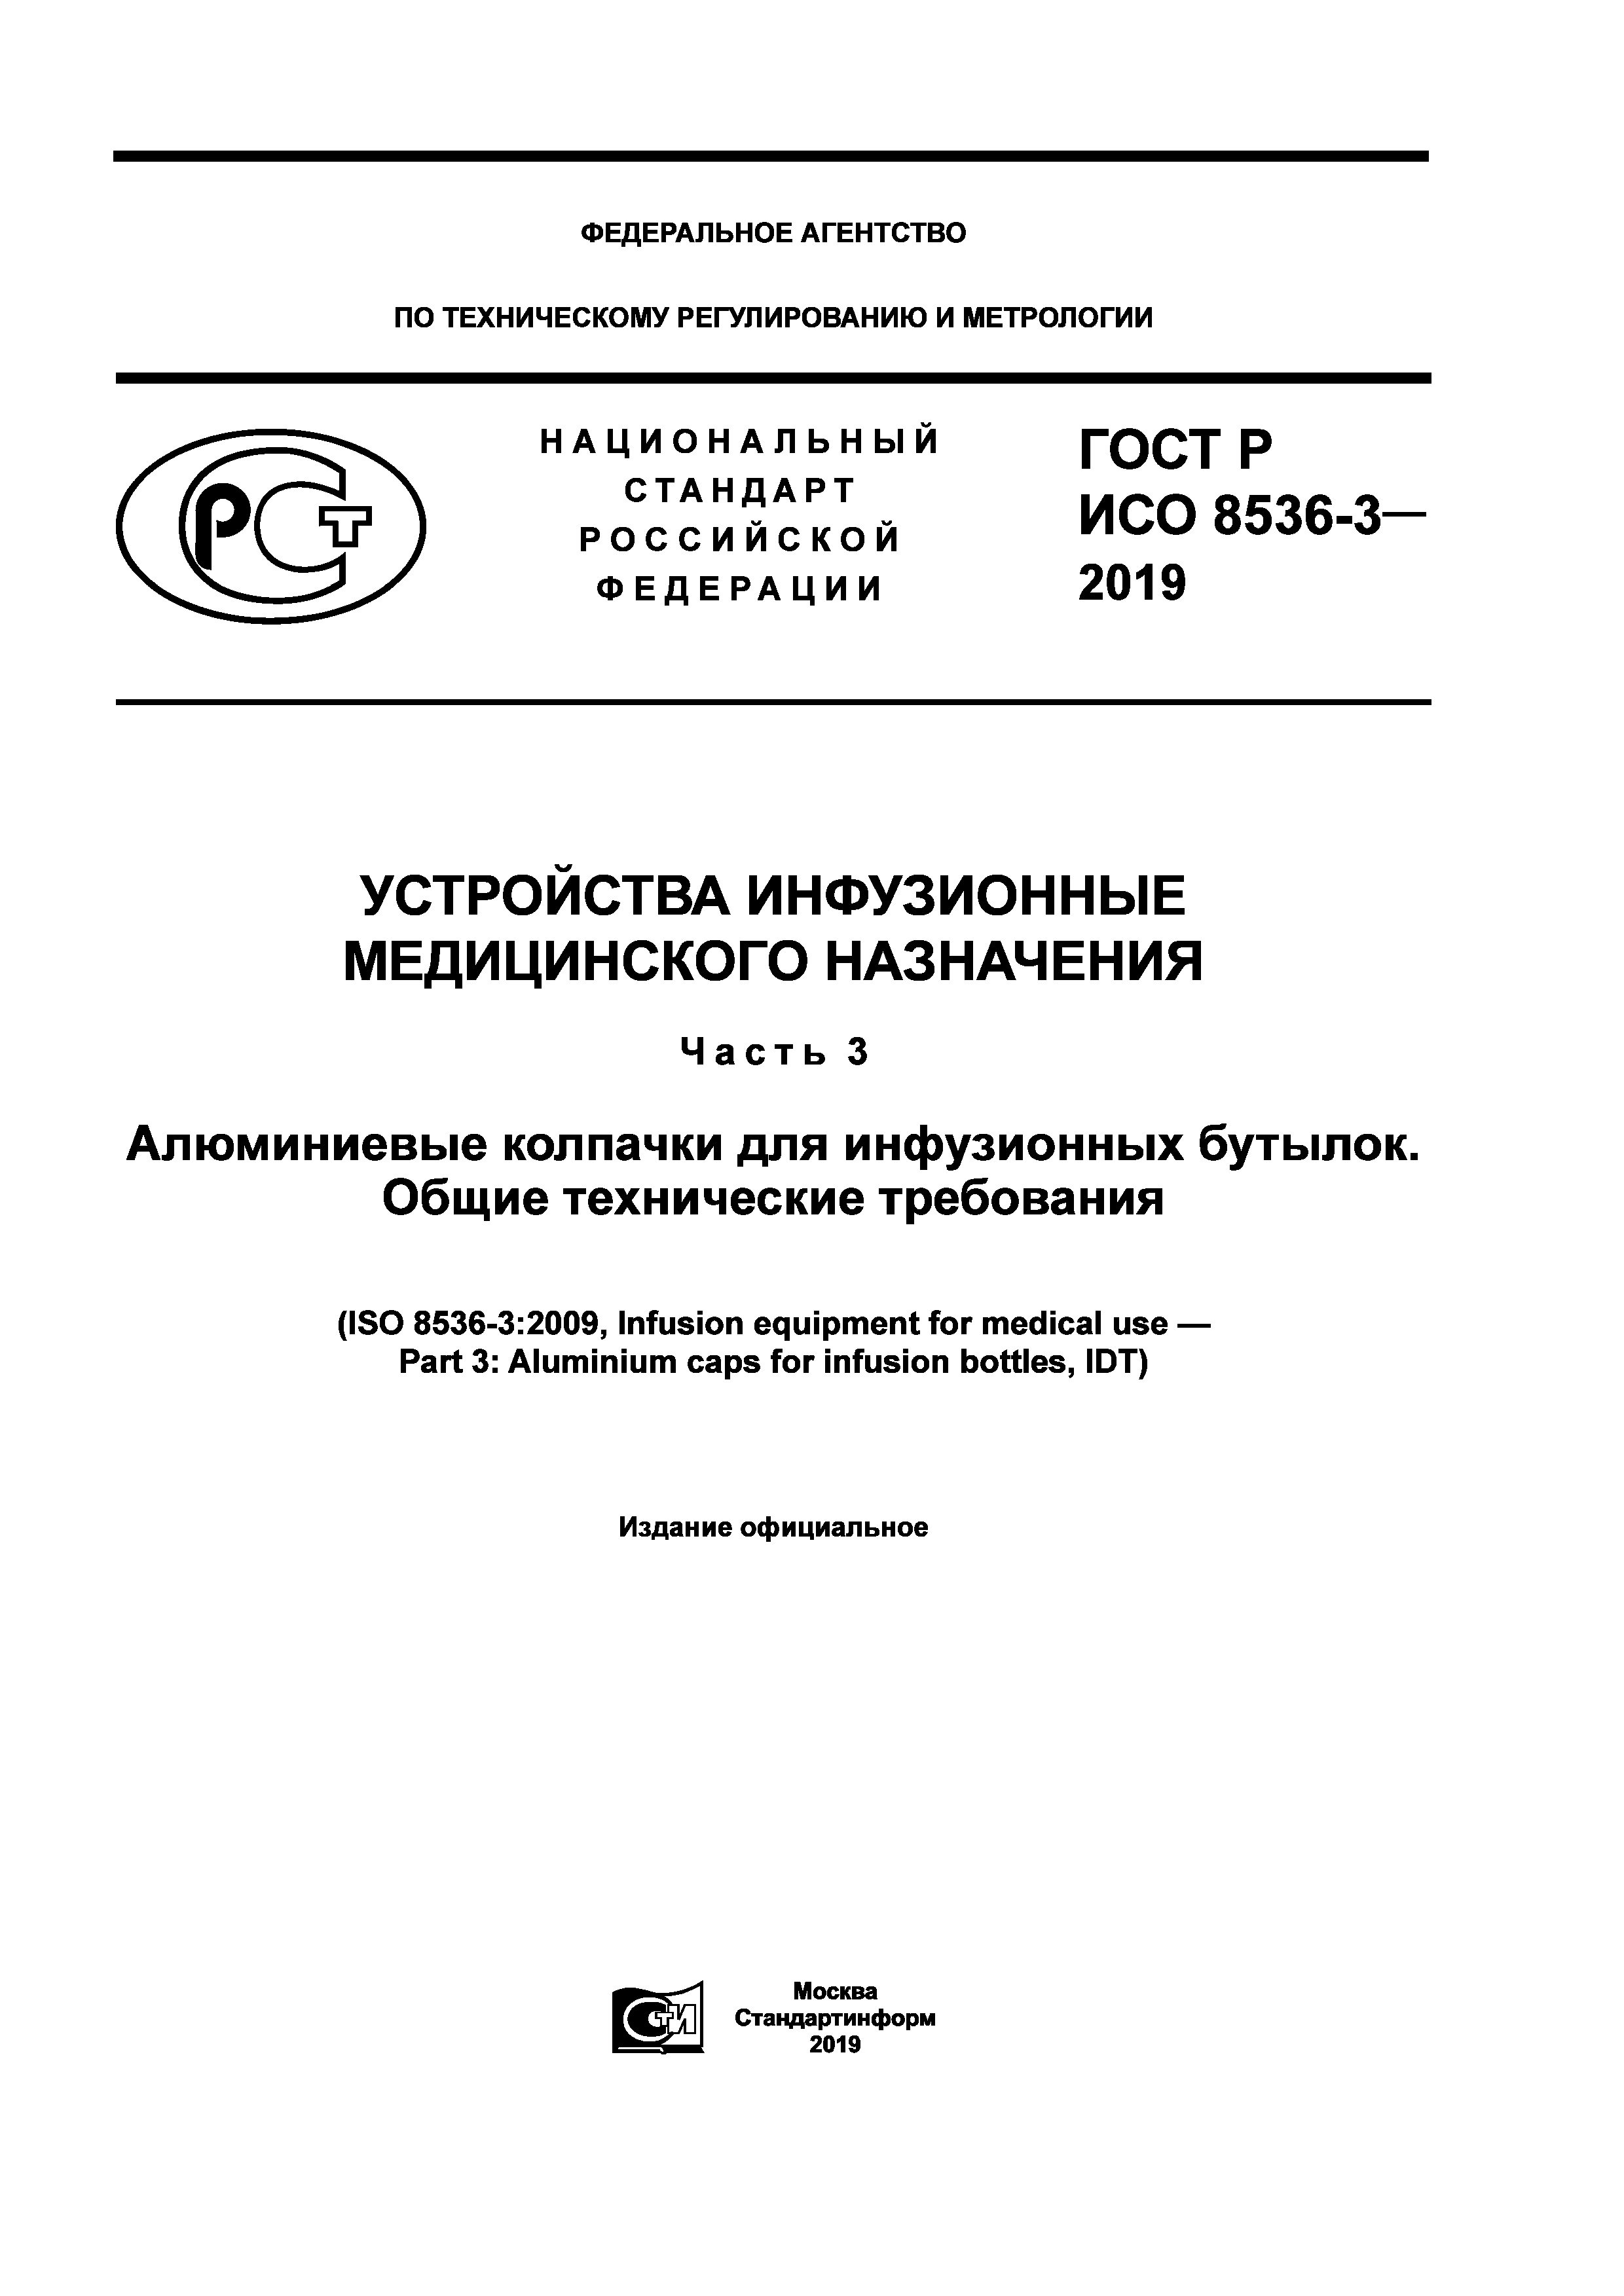 ГОСТ Р ИСО 8536-3-2019